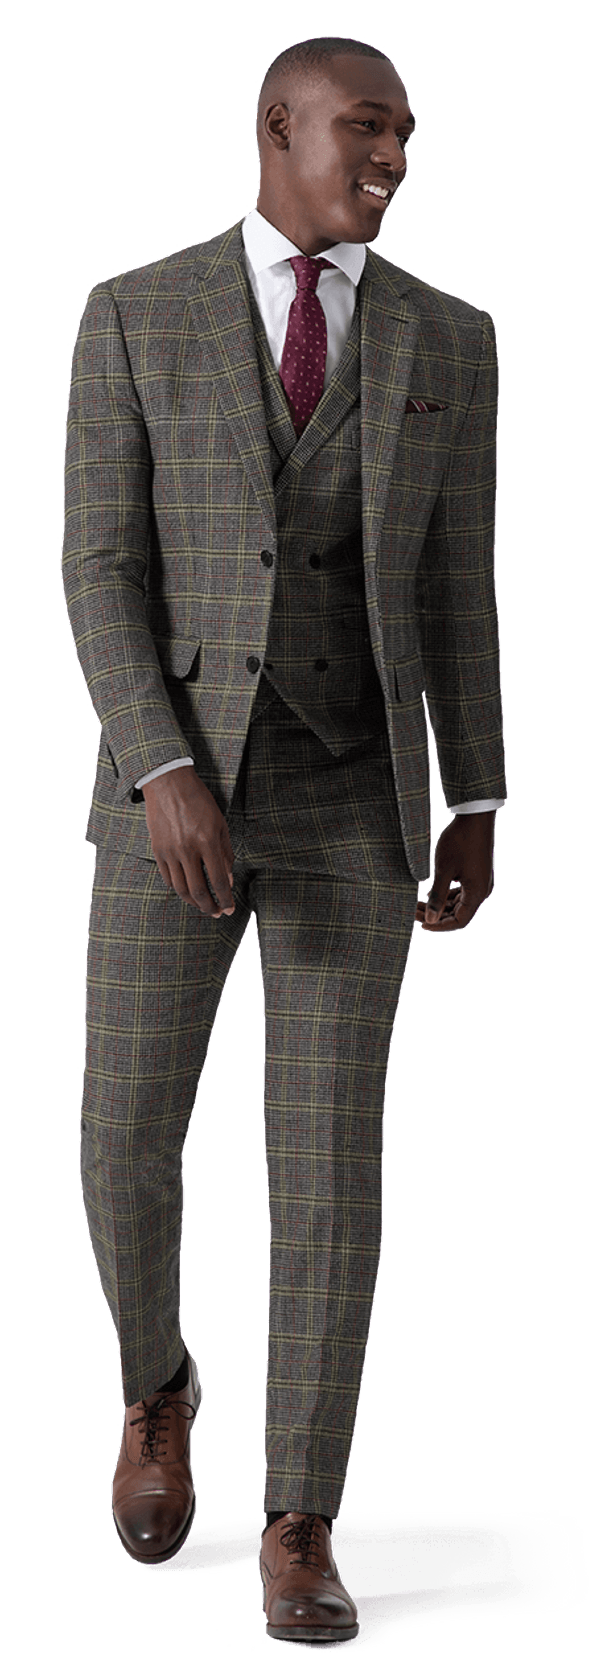 supari suit design